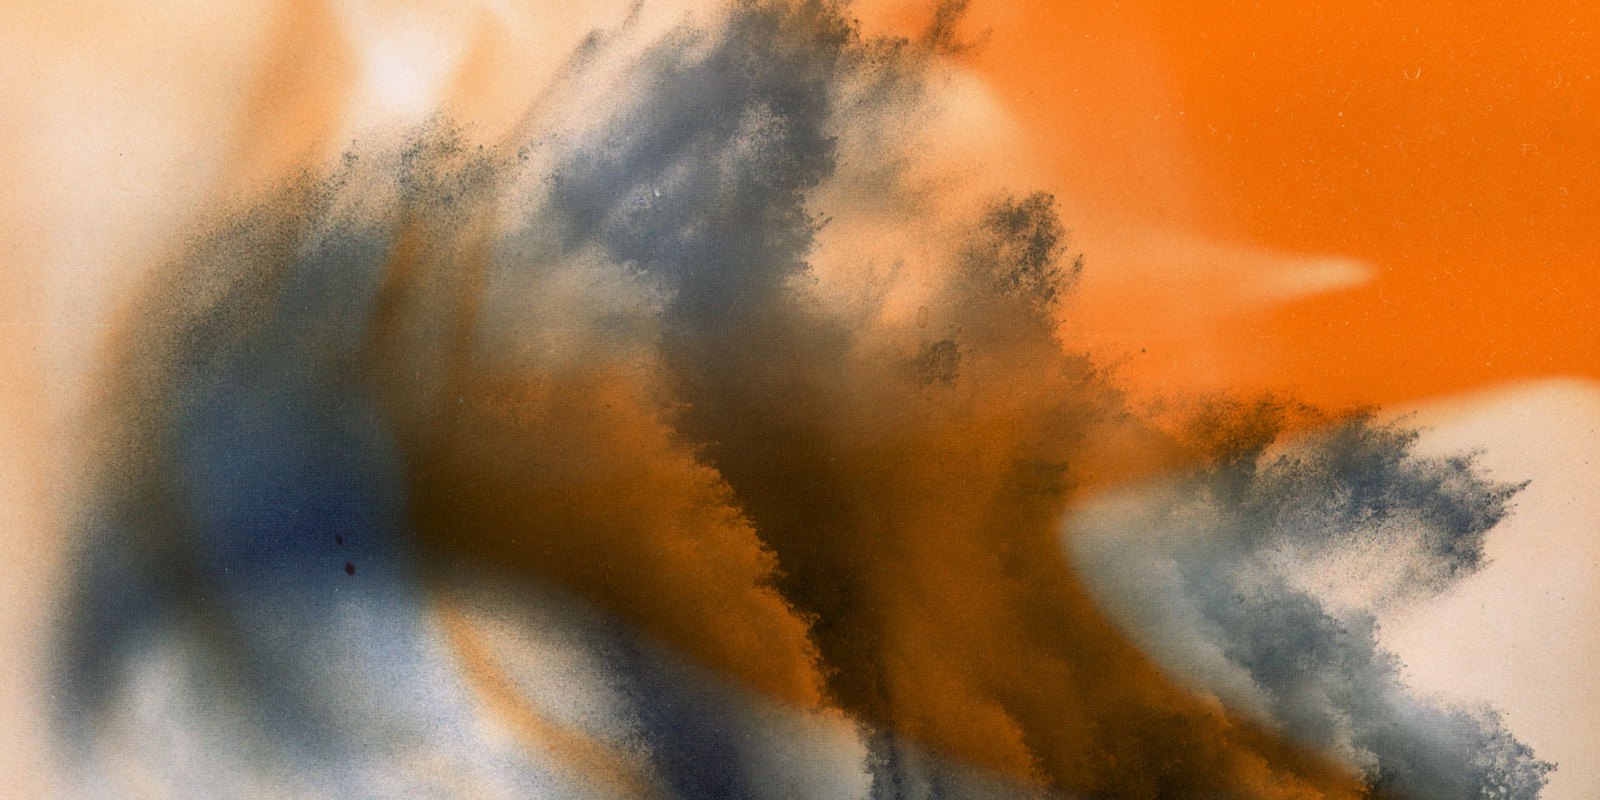 Abstrakte Collage in orange und grau.